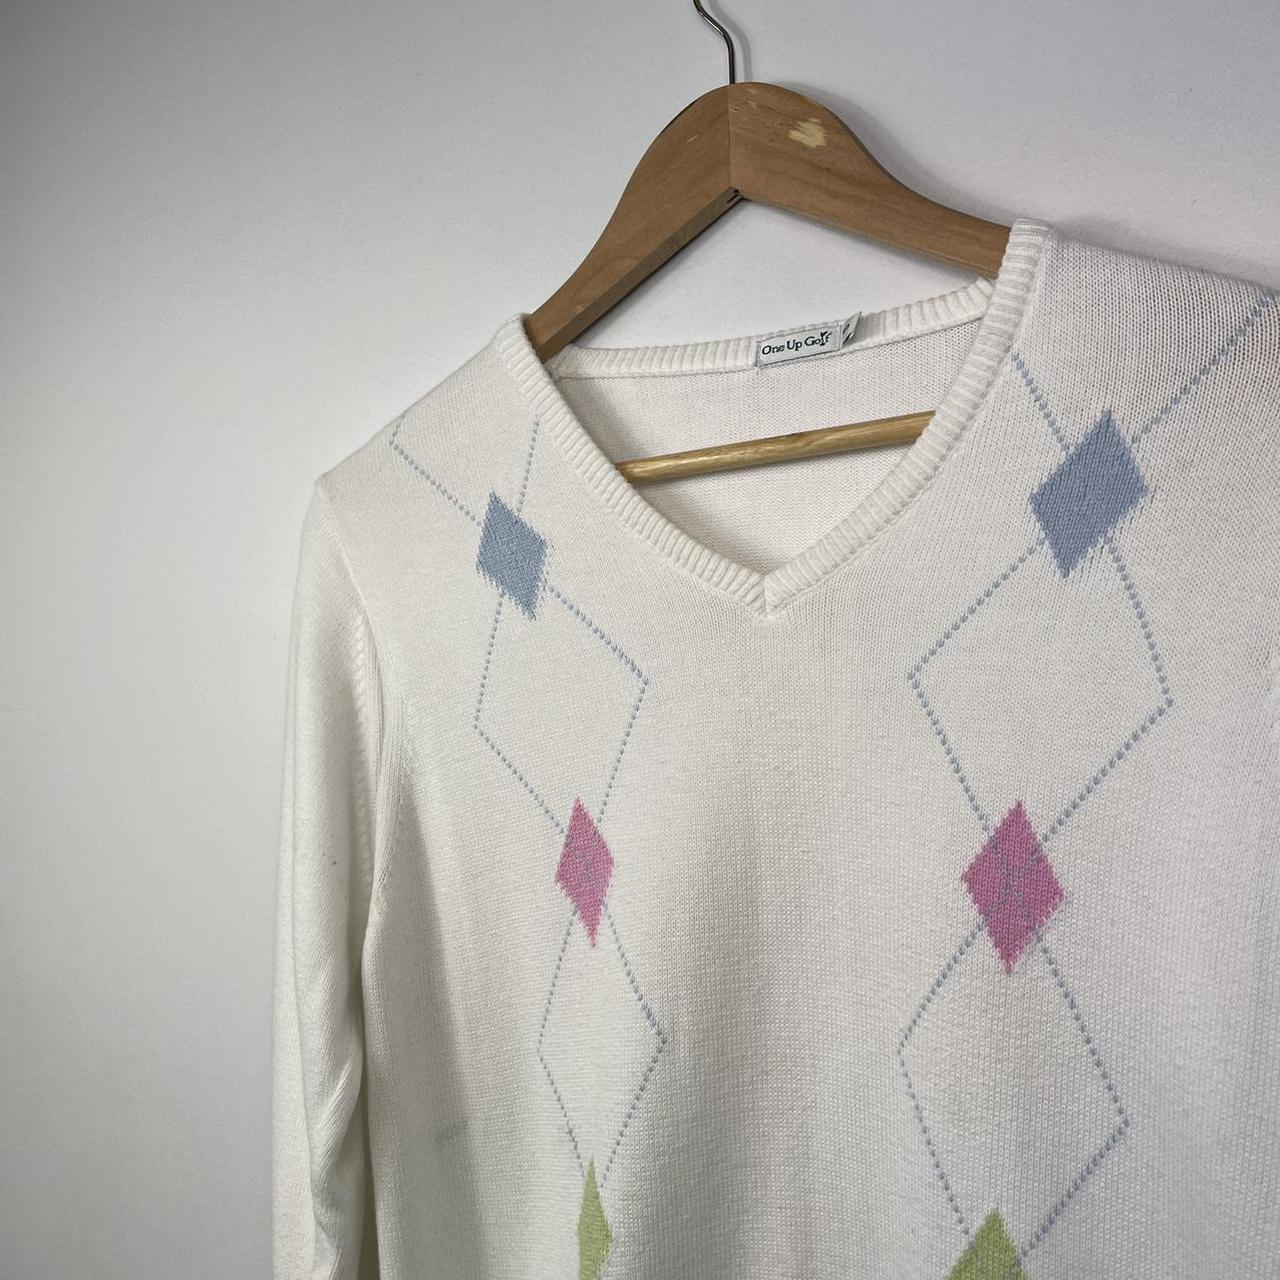 Product Image 2 - Vintage Y2K Argyle White Jumper/Knitwear

-